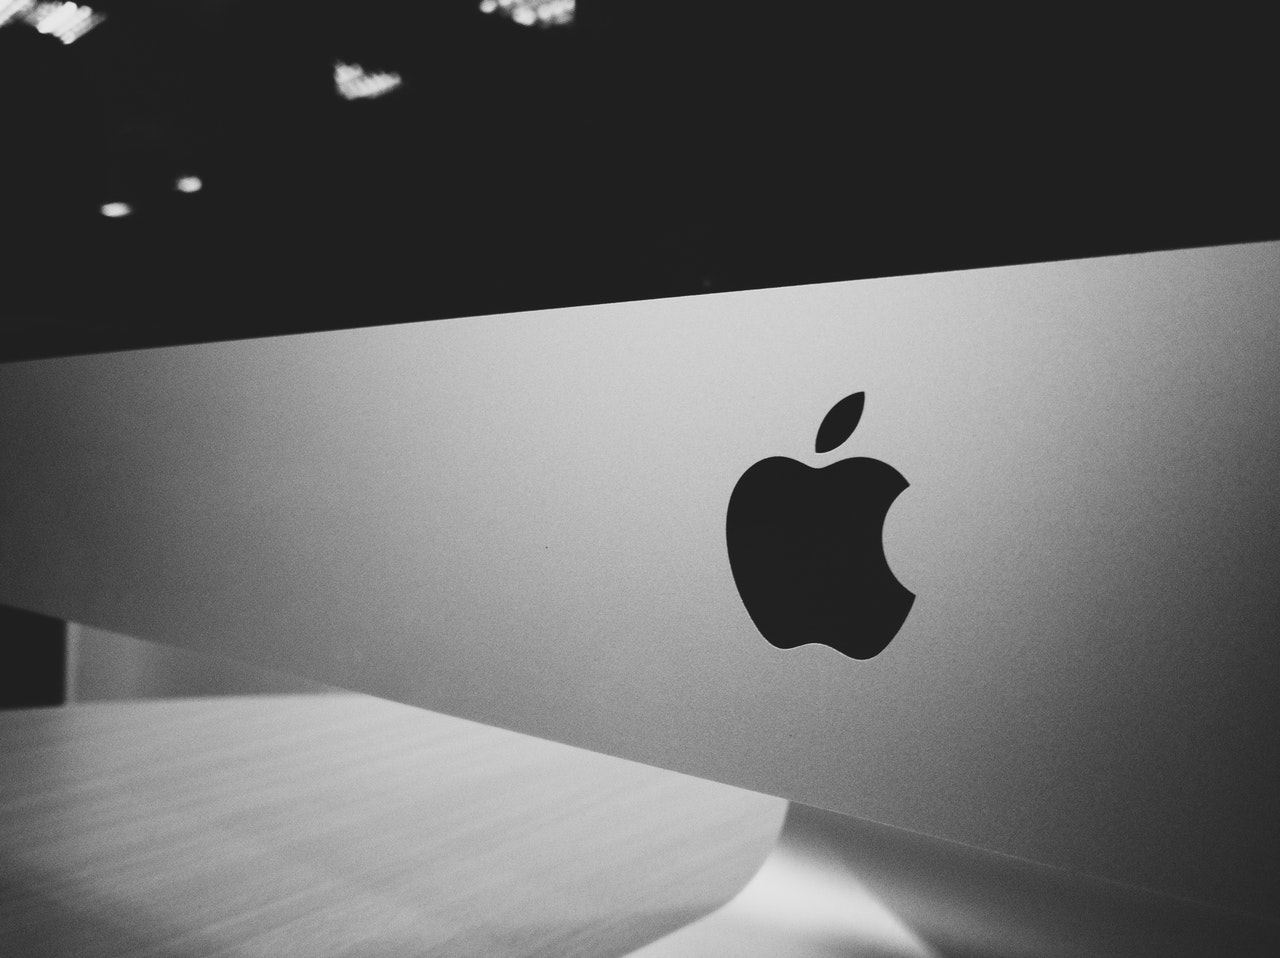 Apple dosáhl tržní kapitalizace 2 biliony USD. Unikátní prvenství začalo z garáže otce Steva Jobse